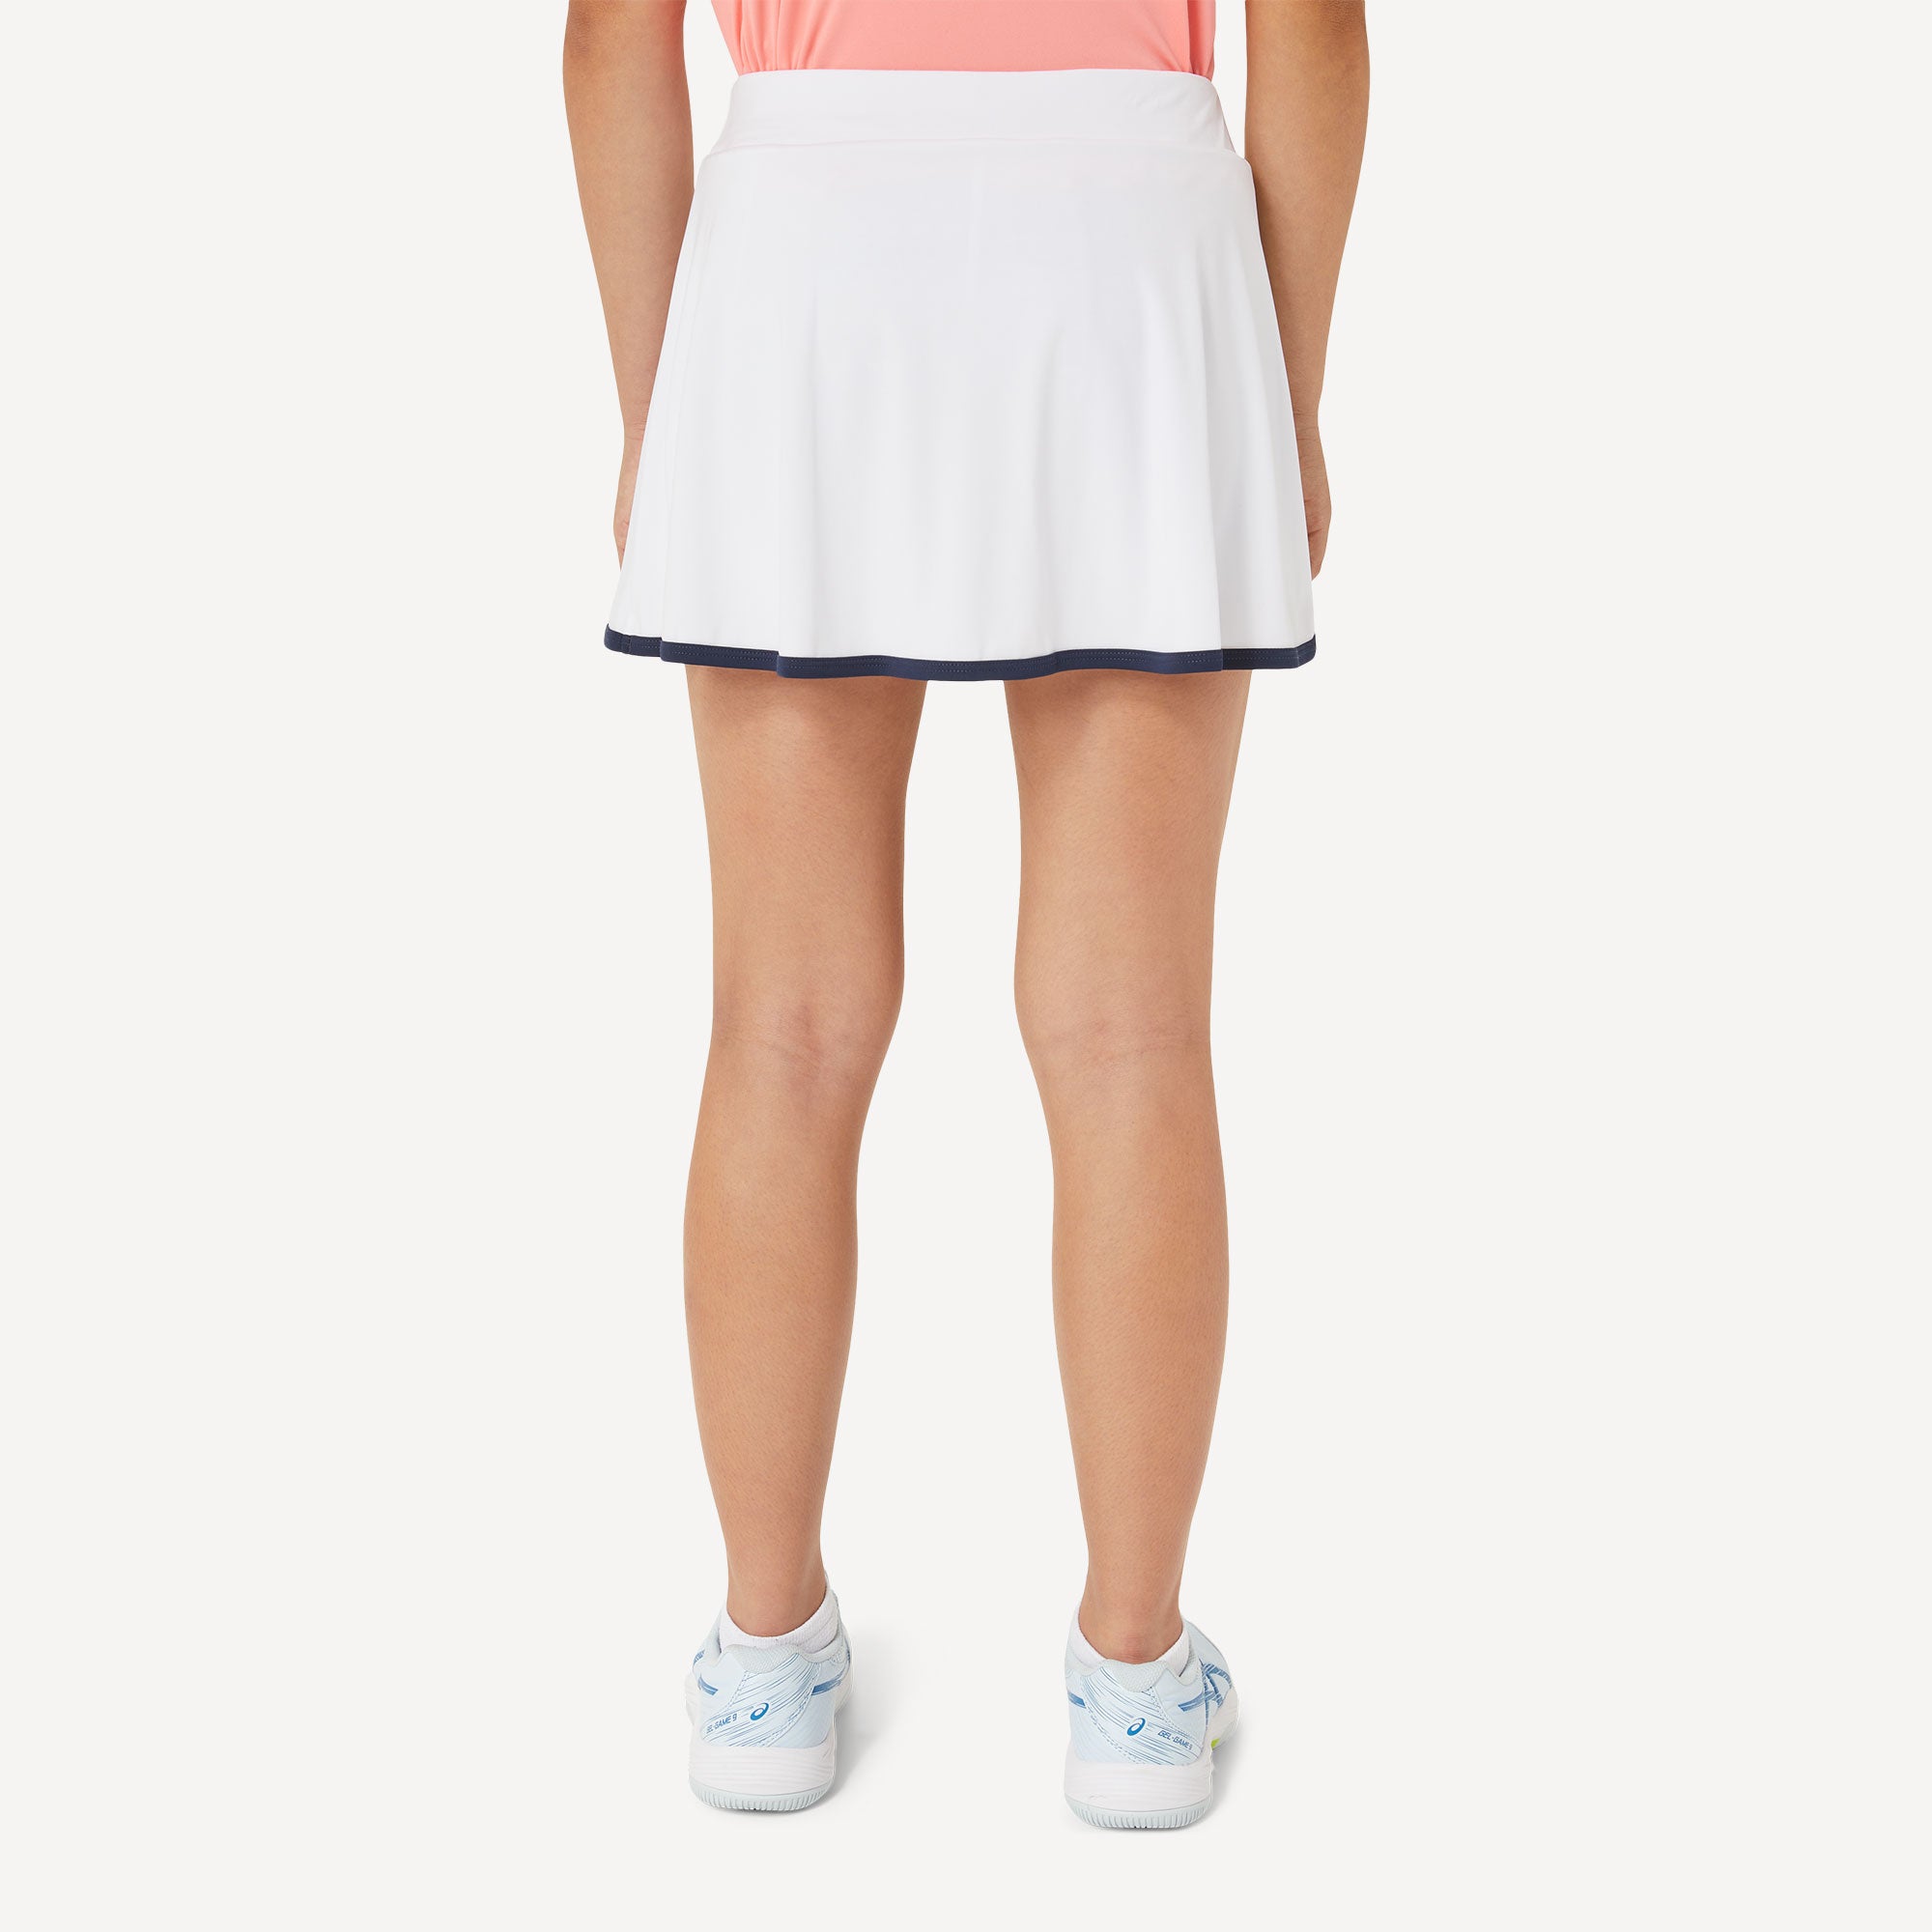 ASICS Girls' Tennis Skort White (2)